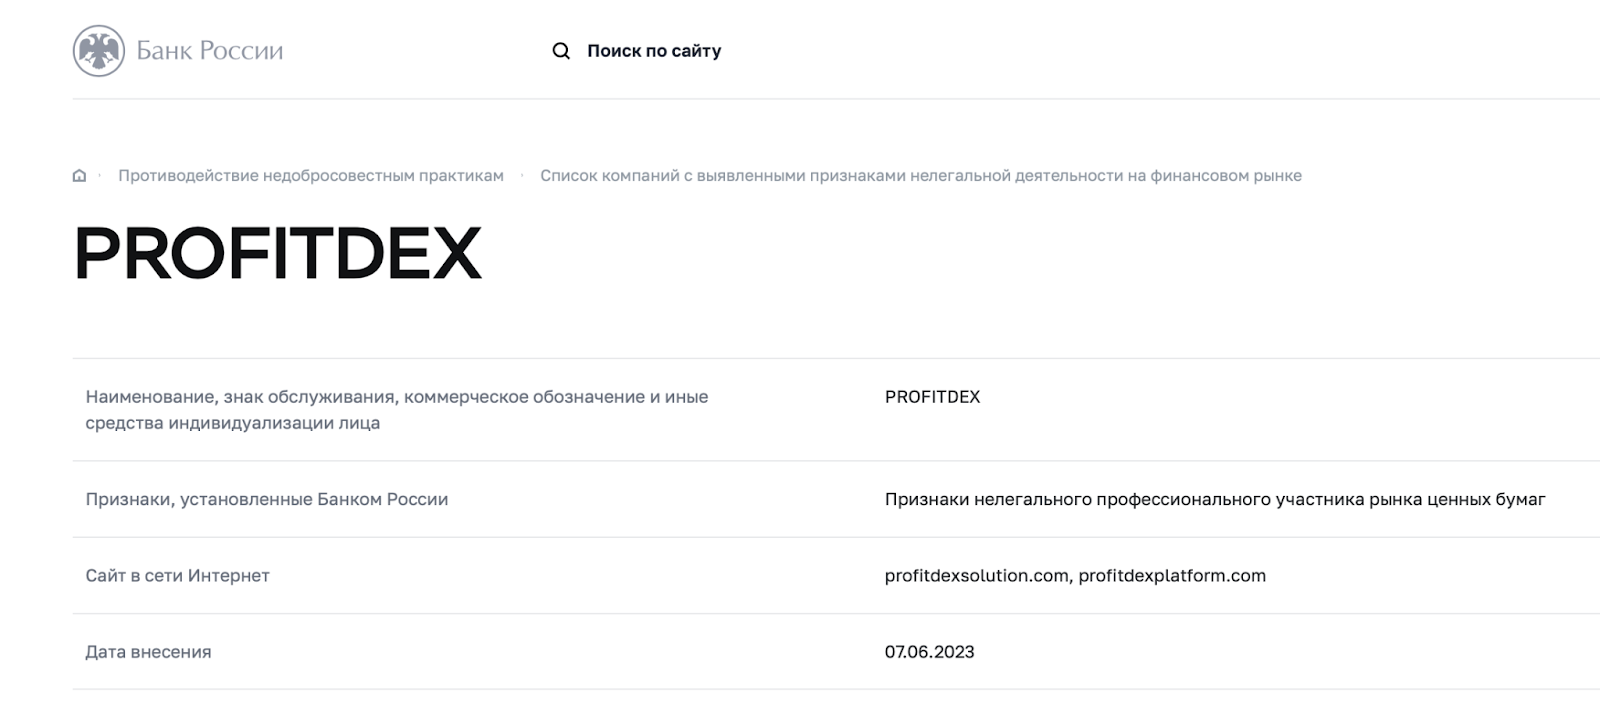 ProfitDex: отзывы клиентов о работе компании в 2023 году